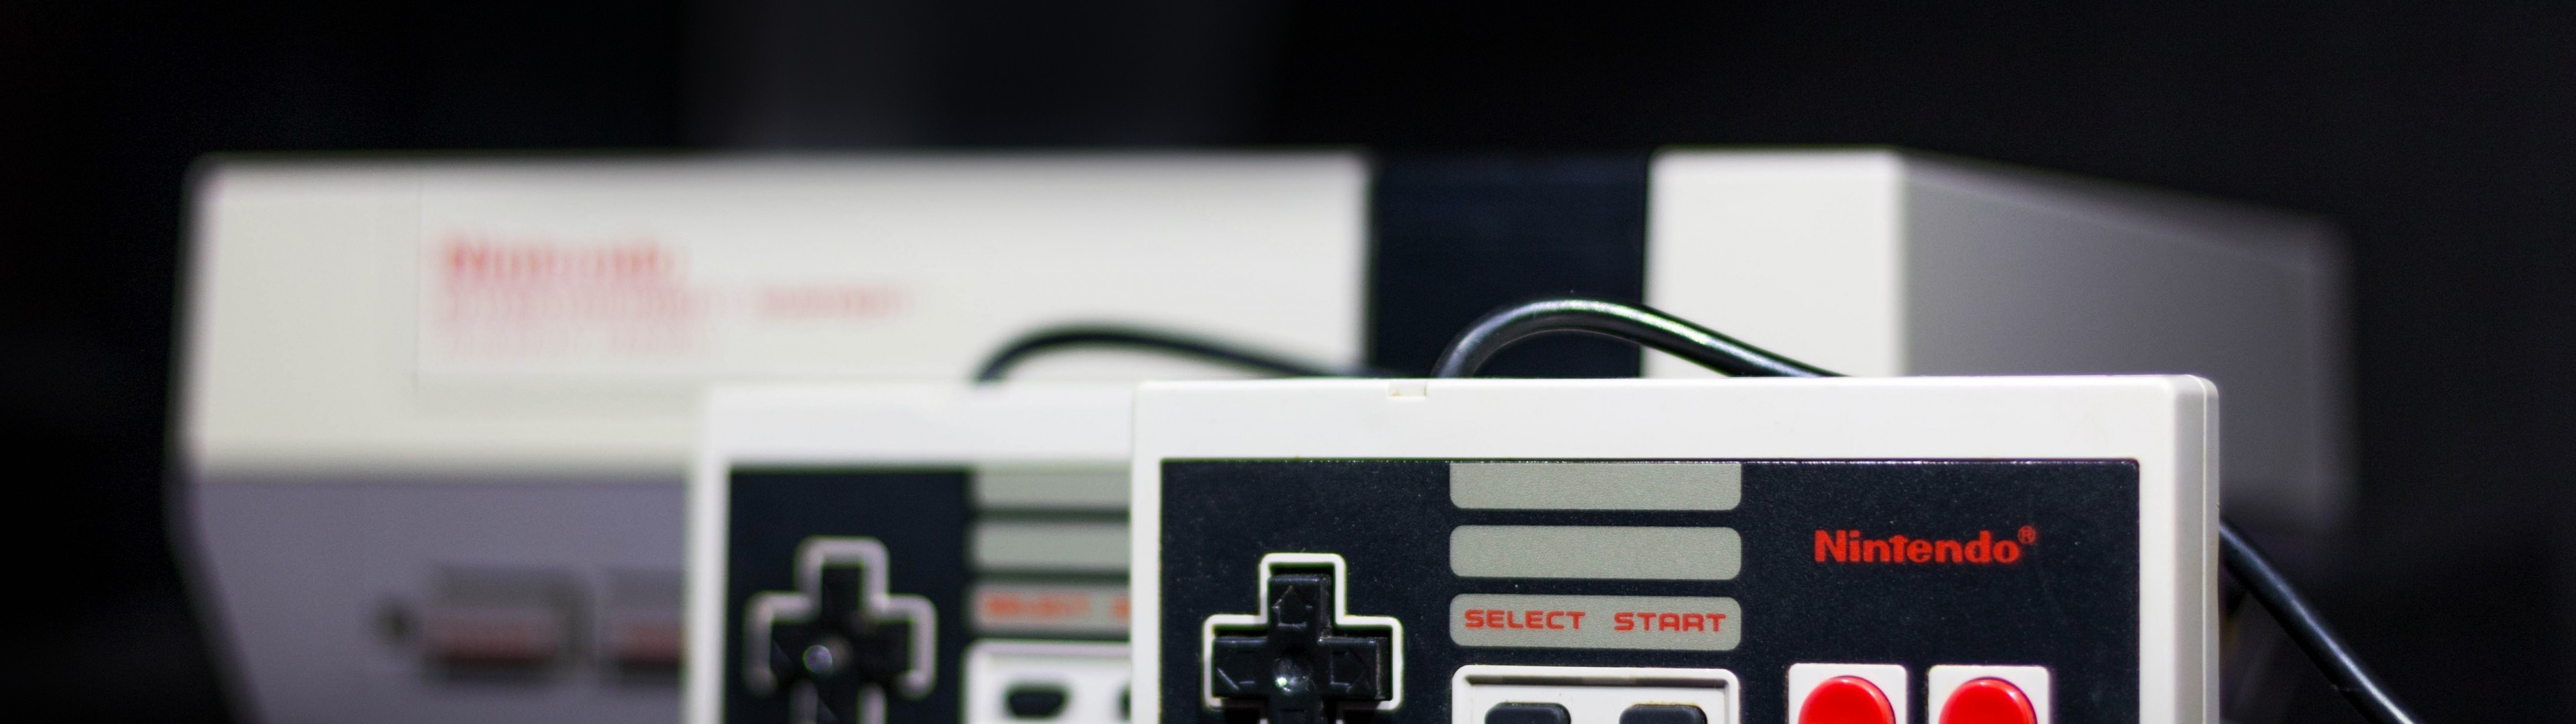 Nintendo Nes Classic Edition, Gaming, Nostalgia, Controller - Nes Controller - HD Wallpaper 